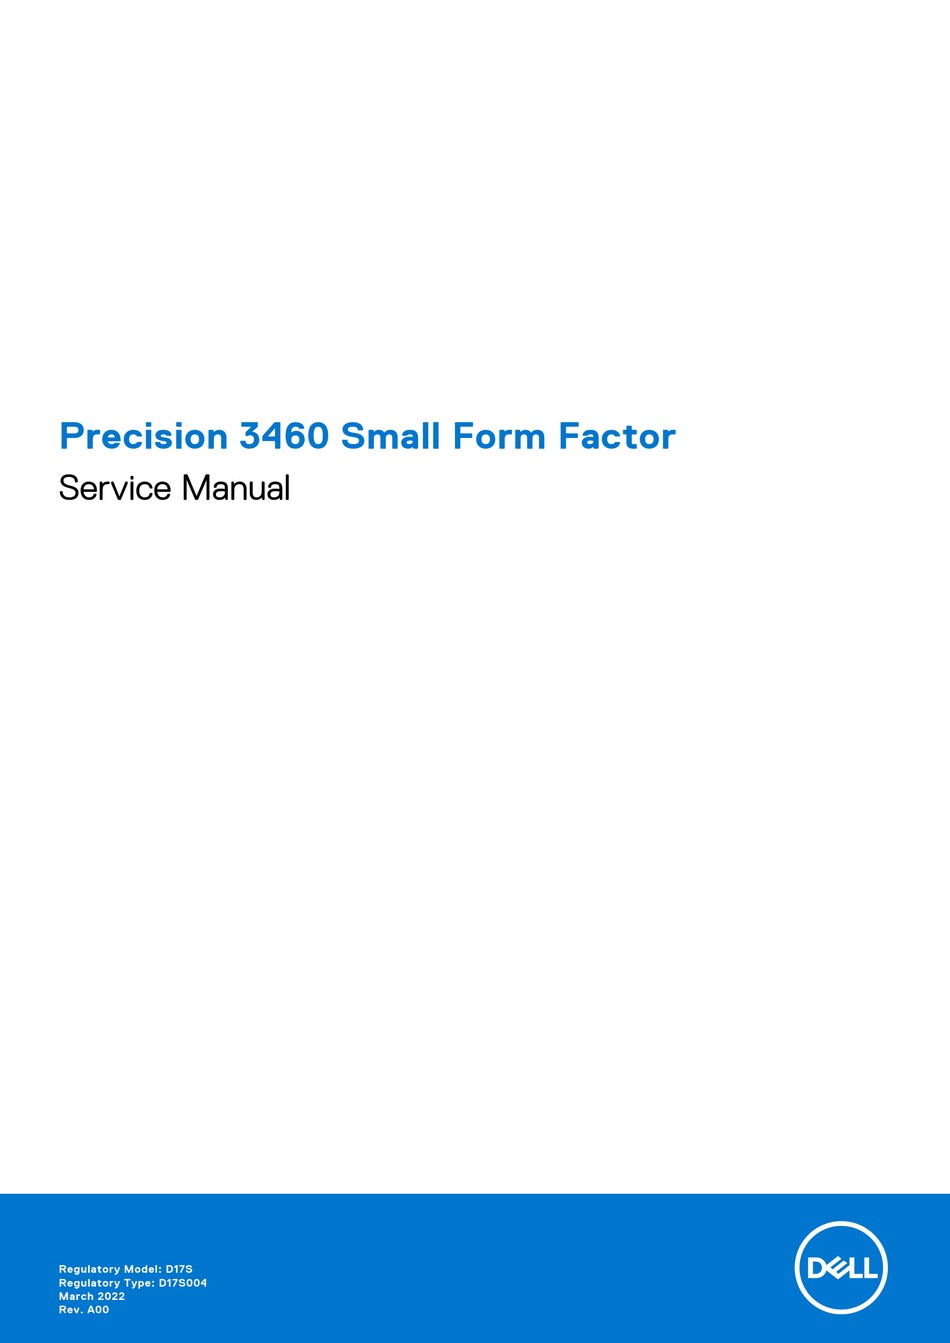 dell-precision-3460-small-form-factor-service-manual-pdf-download